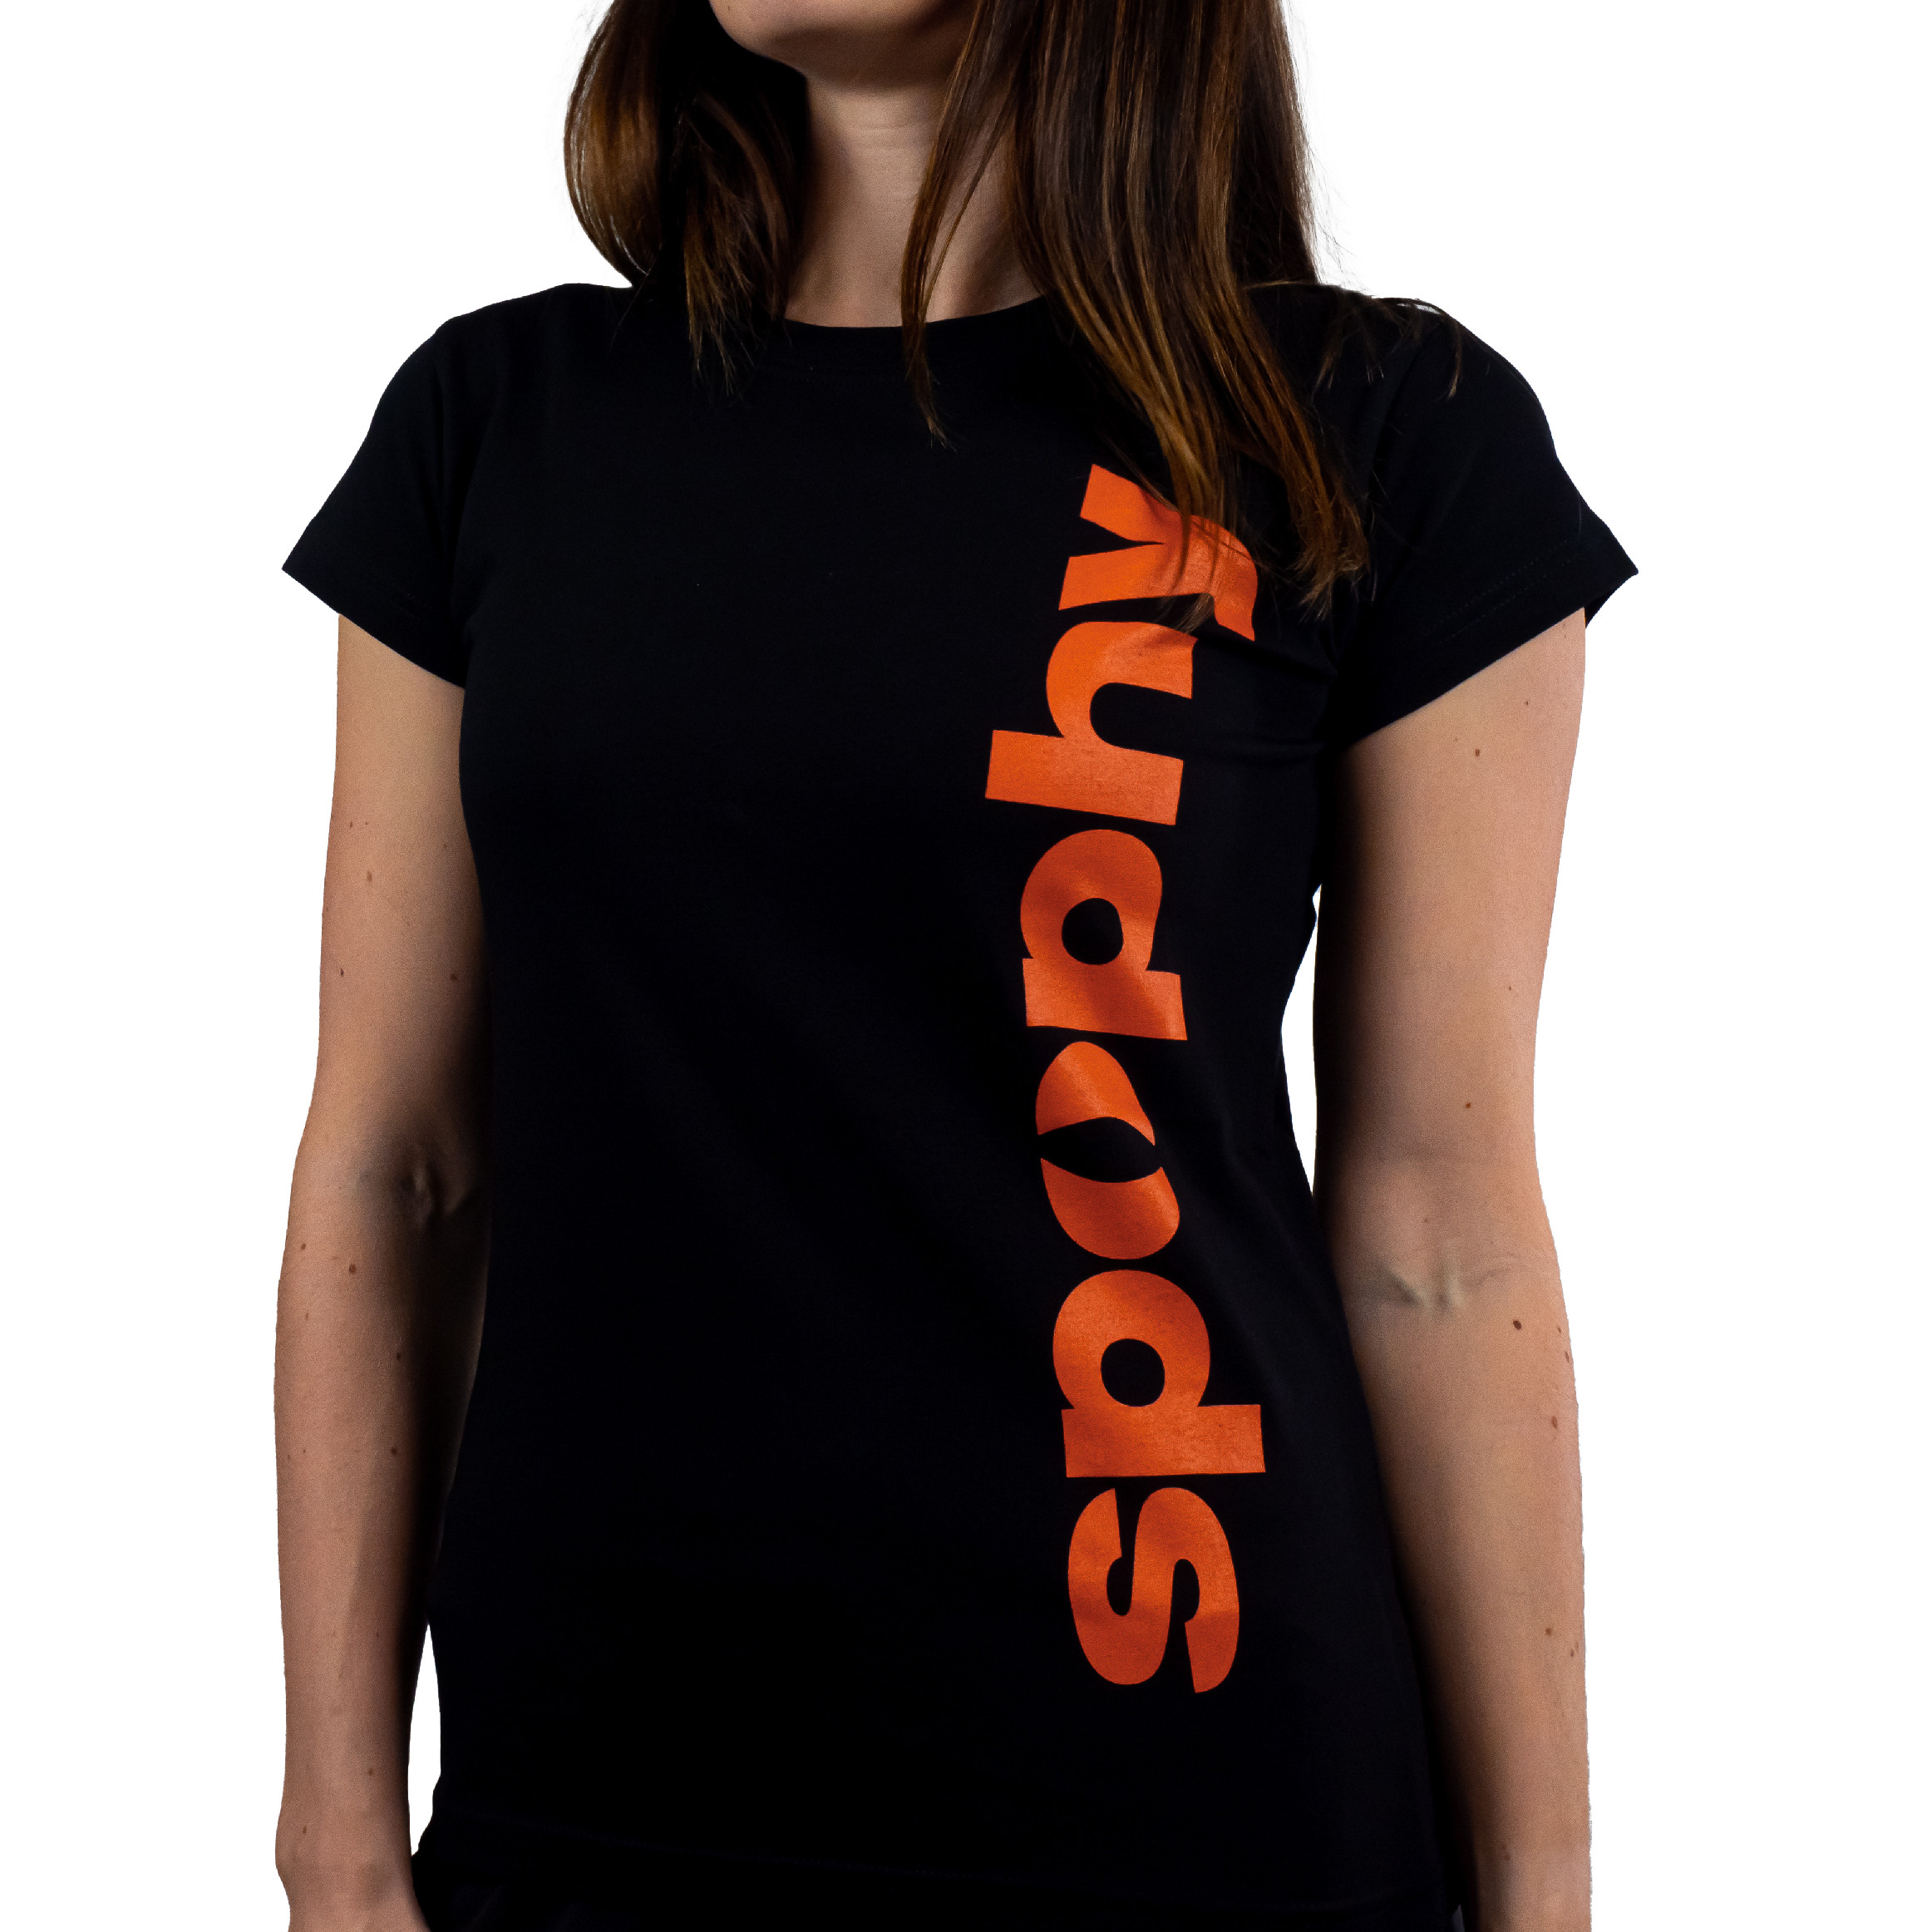 Spophy T-Shirt, tričko s nápisem Train Physio Sleep Repeat, dámské Velikost: XL